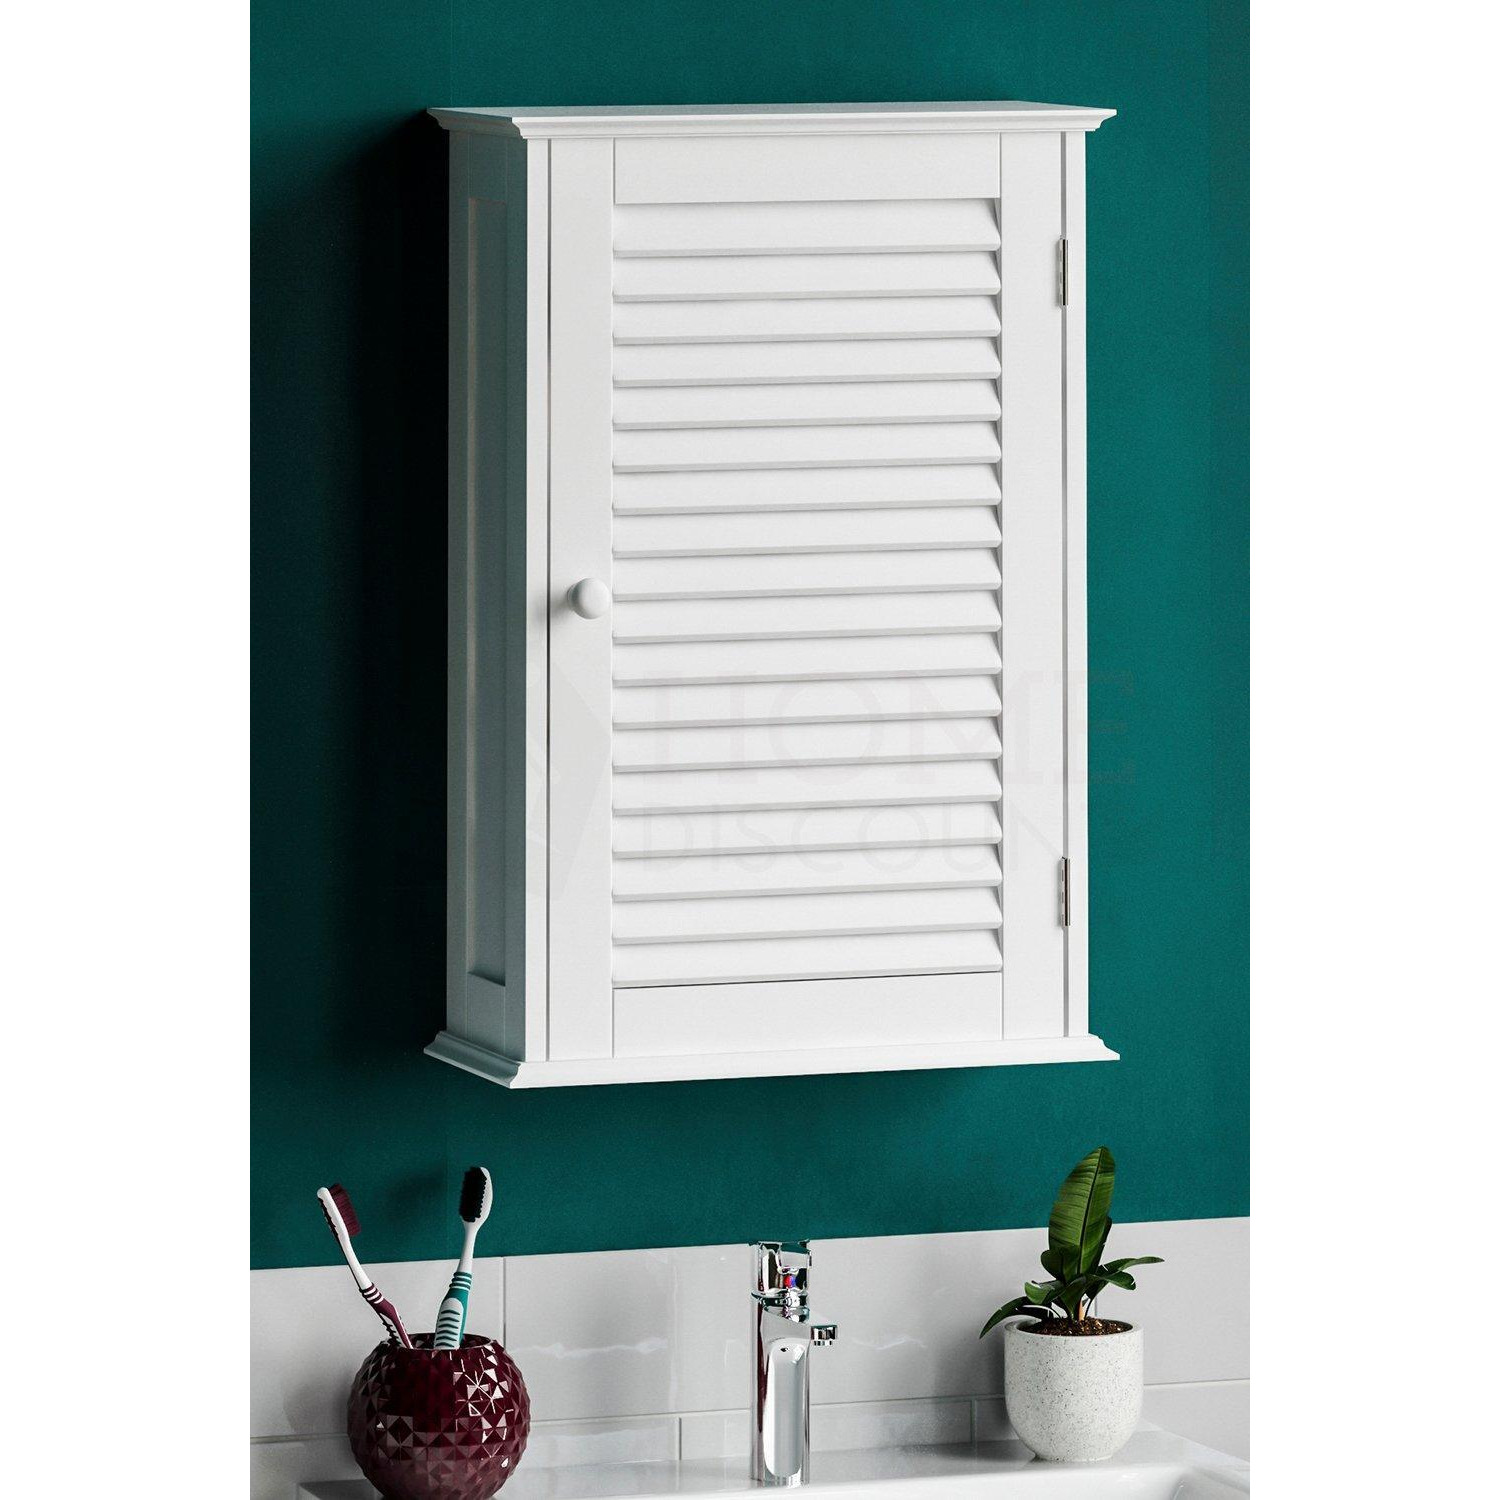 Bath Vida Liano 1 Door Wall Cabinet with Shelves Bathroom Storage - image 1